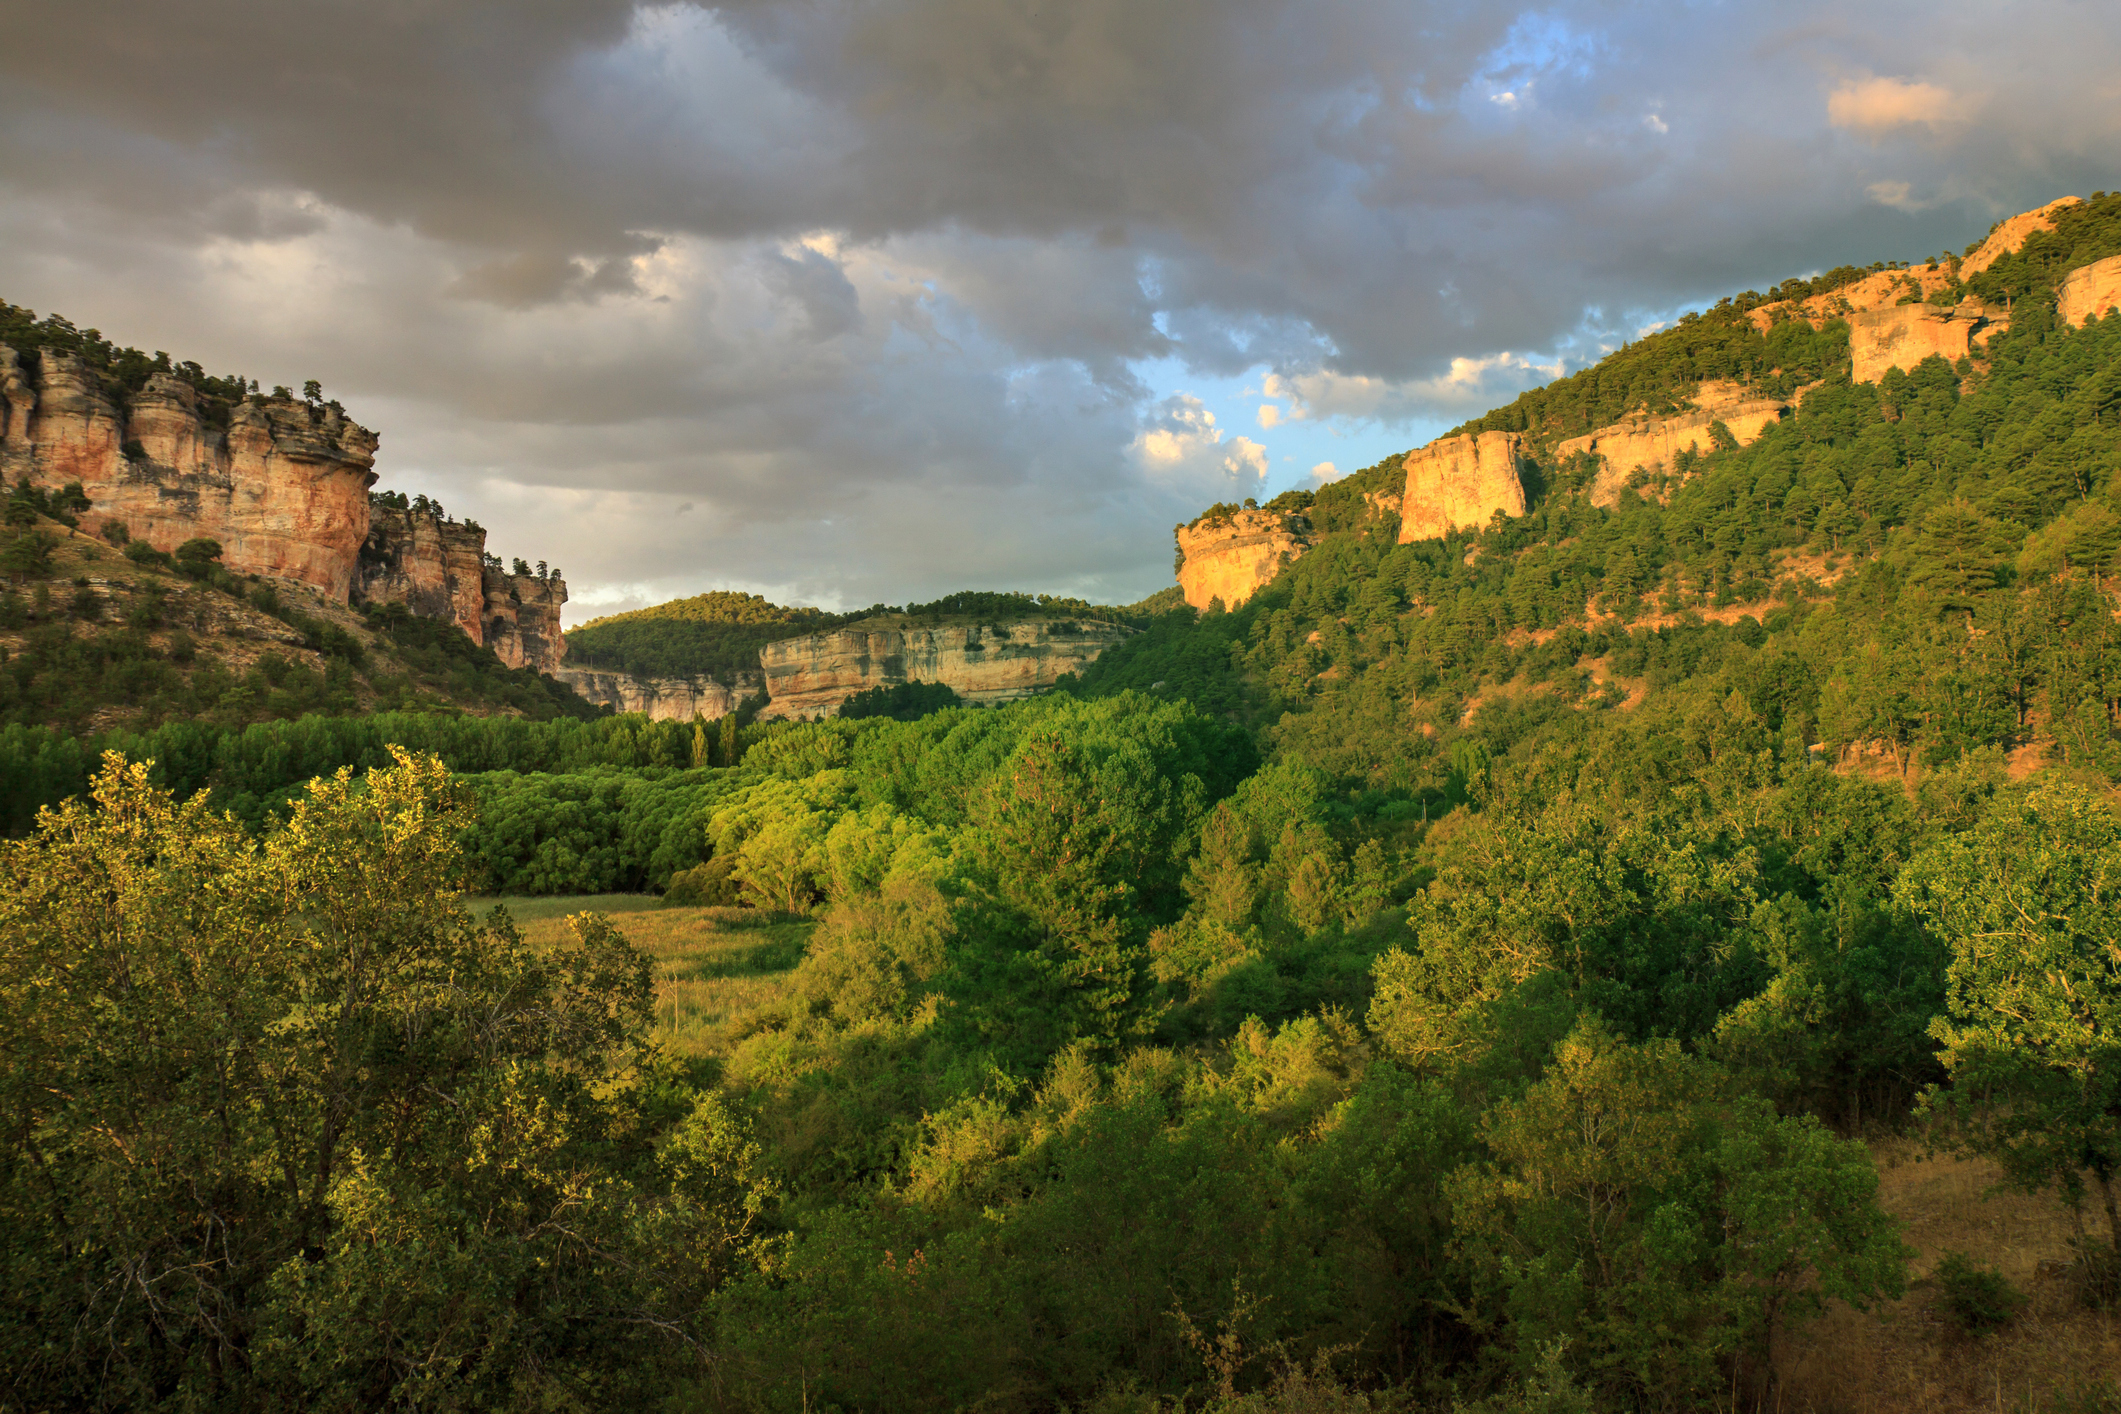 Cliffs-in-Serrania-de-Cuenca-at-sunset-598136490_2125x1417.jpeg